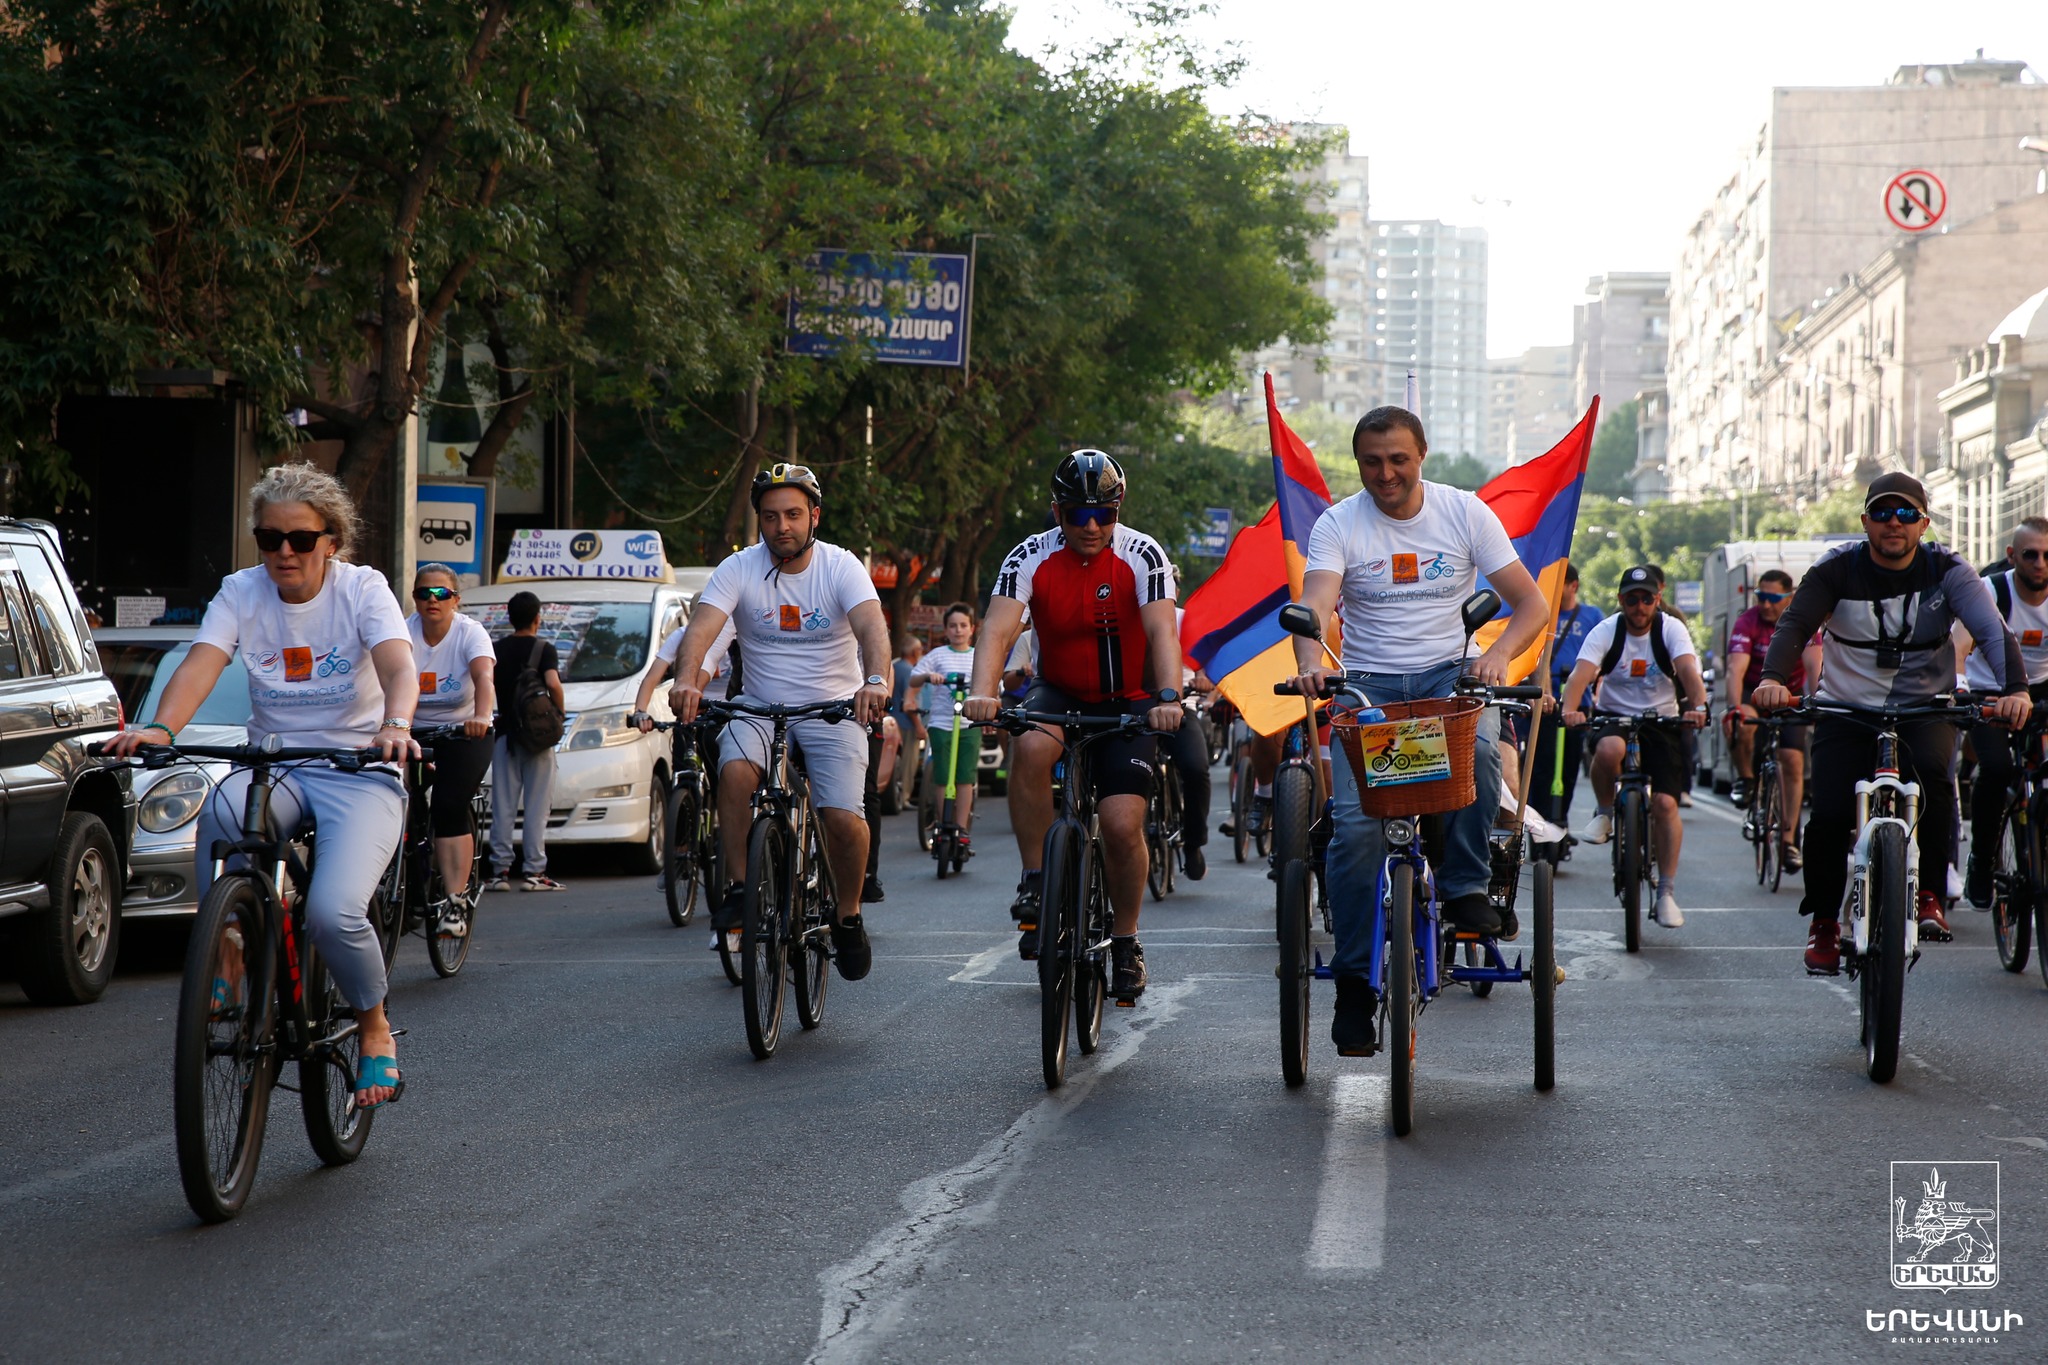 Երևանում նշվել է հեծանվի համաշխարհային օրն ու հեծանվորդների ֆեդերացիայի 10-ամյակը